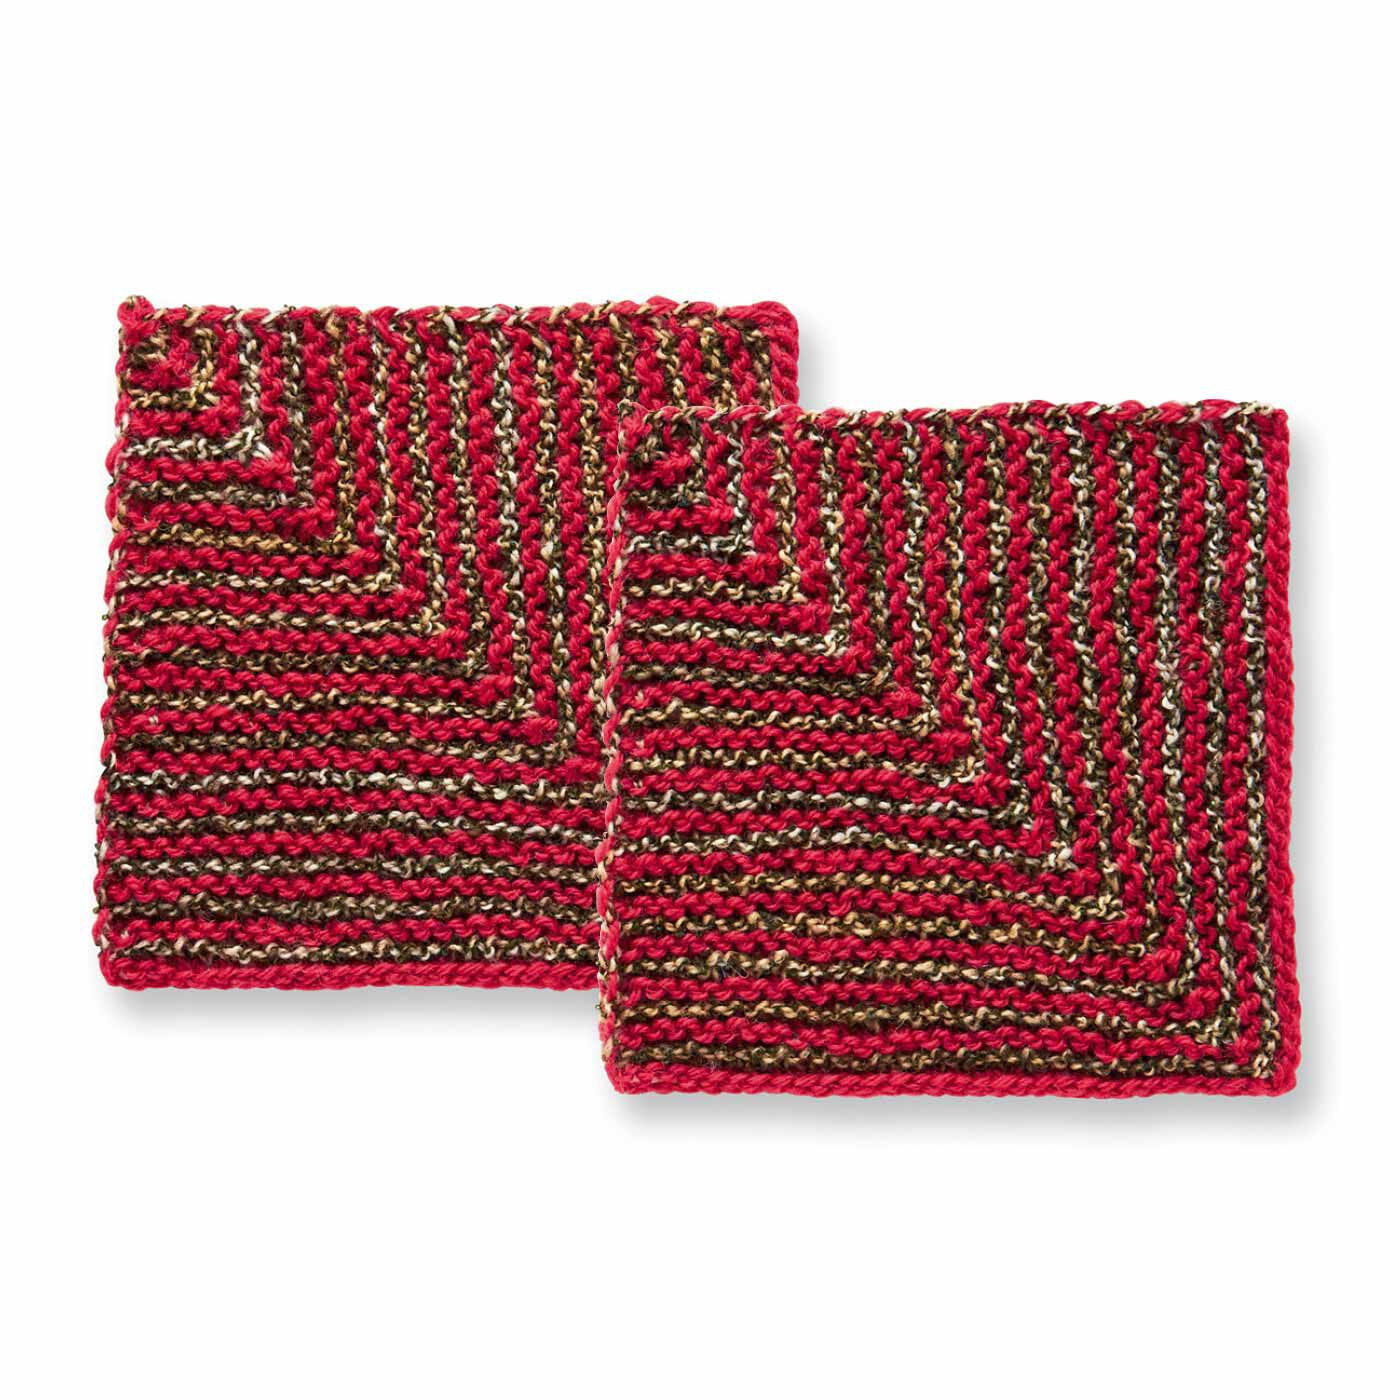 クチュリエ|棒針編みの沼にはまる ユニーク編み地のサンプラーの会|どんどん減るドミノ編み